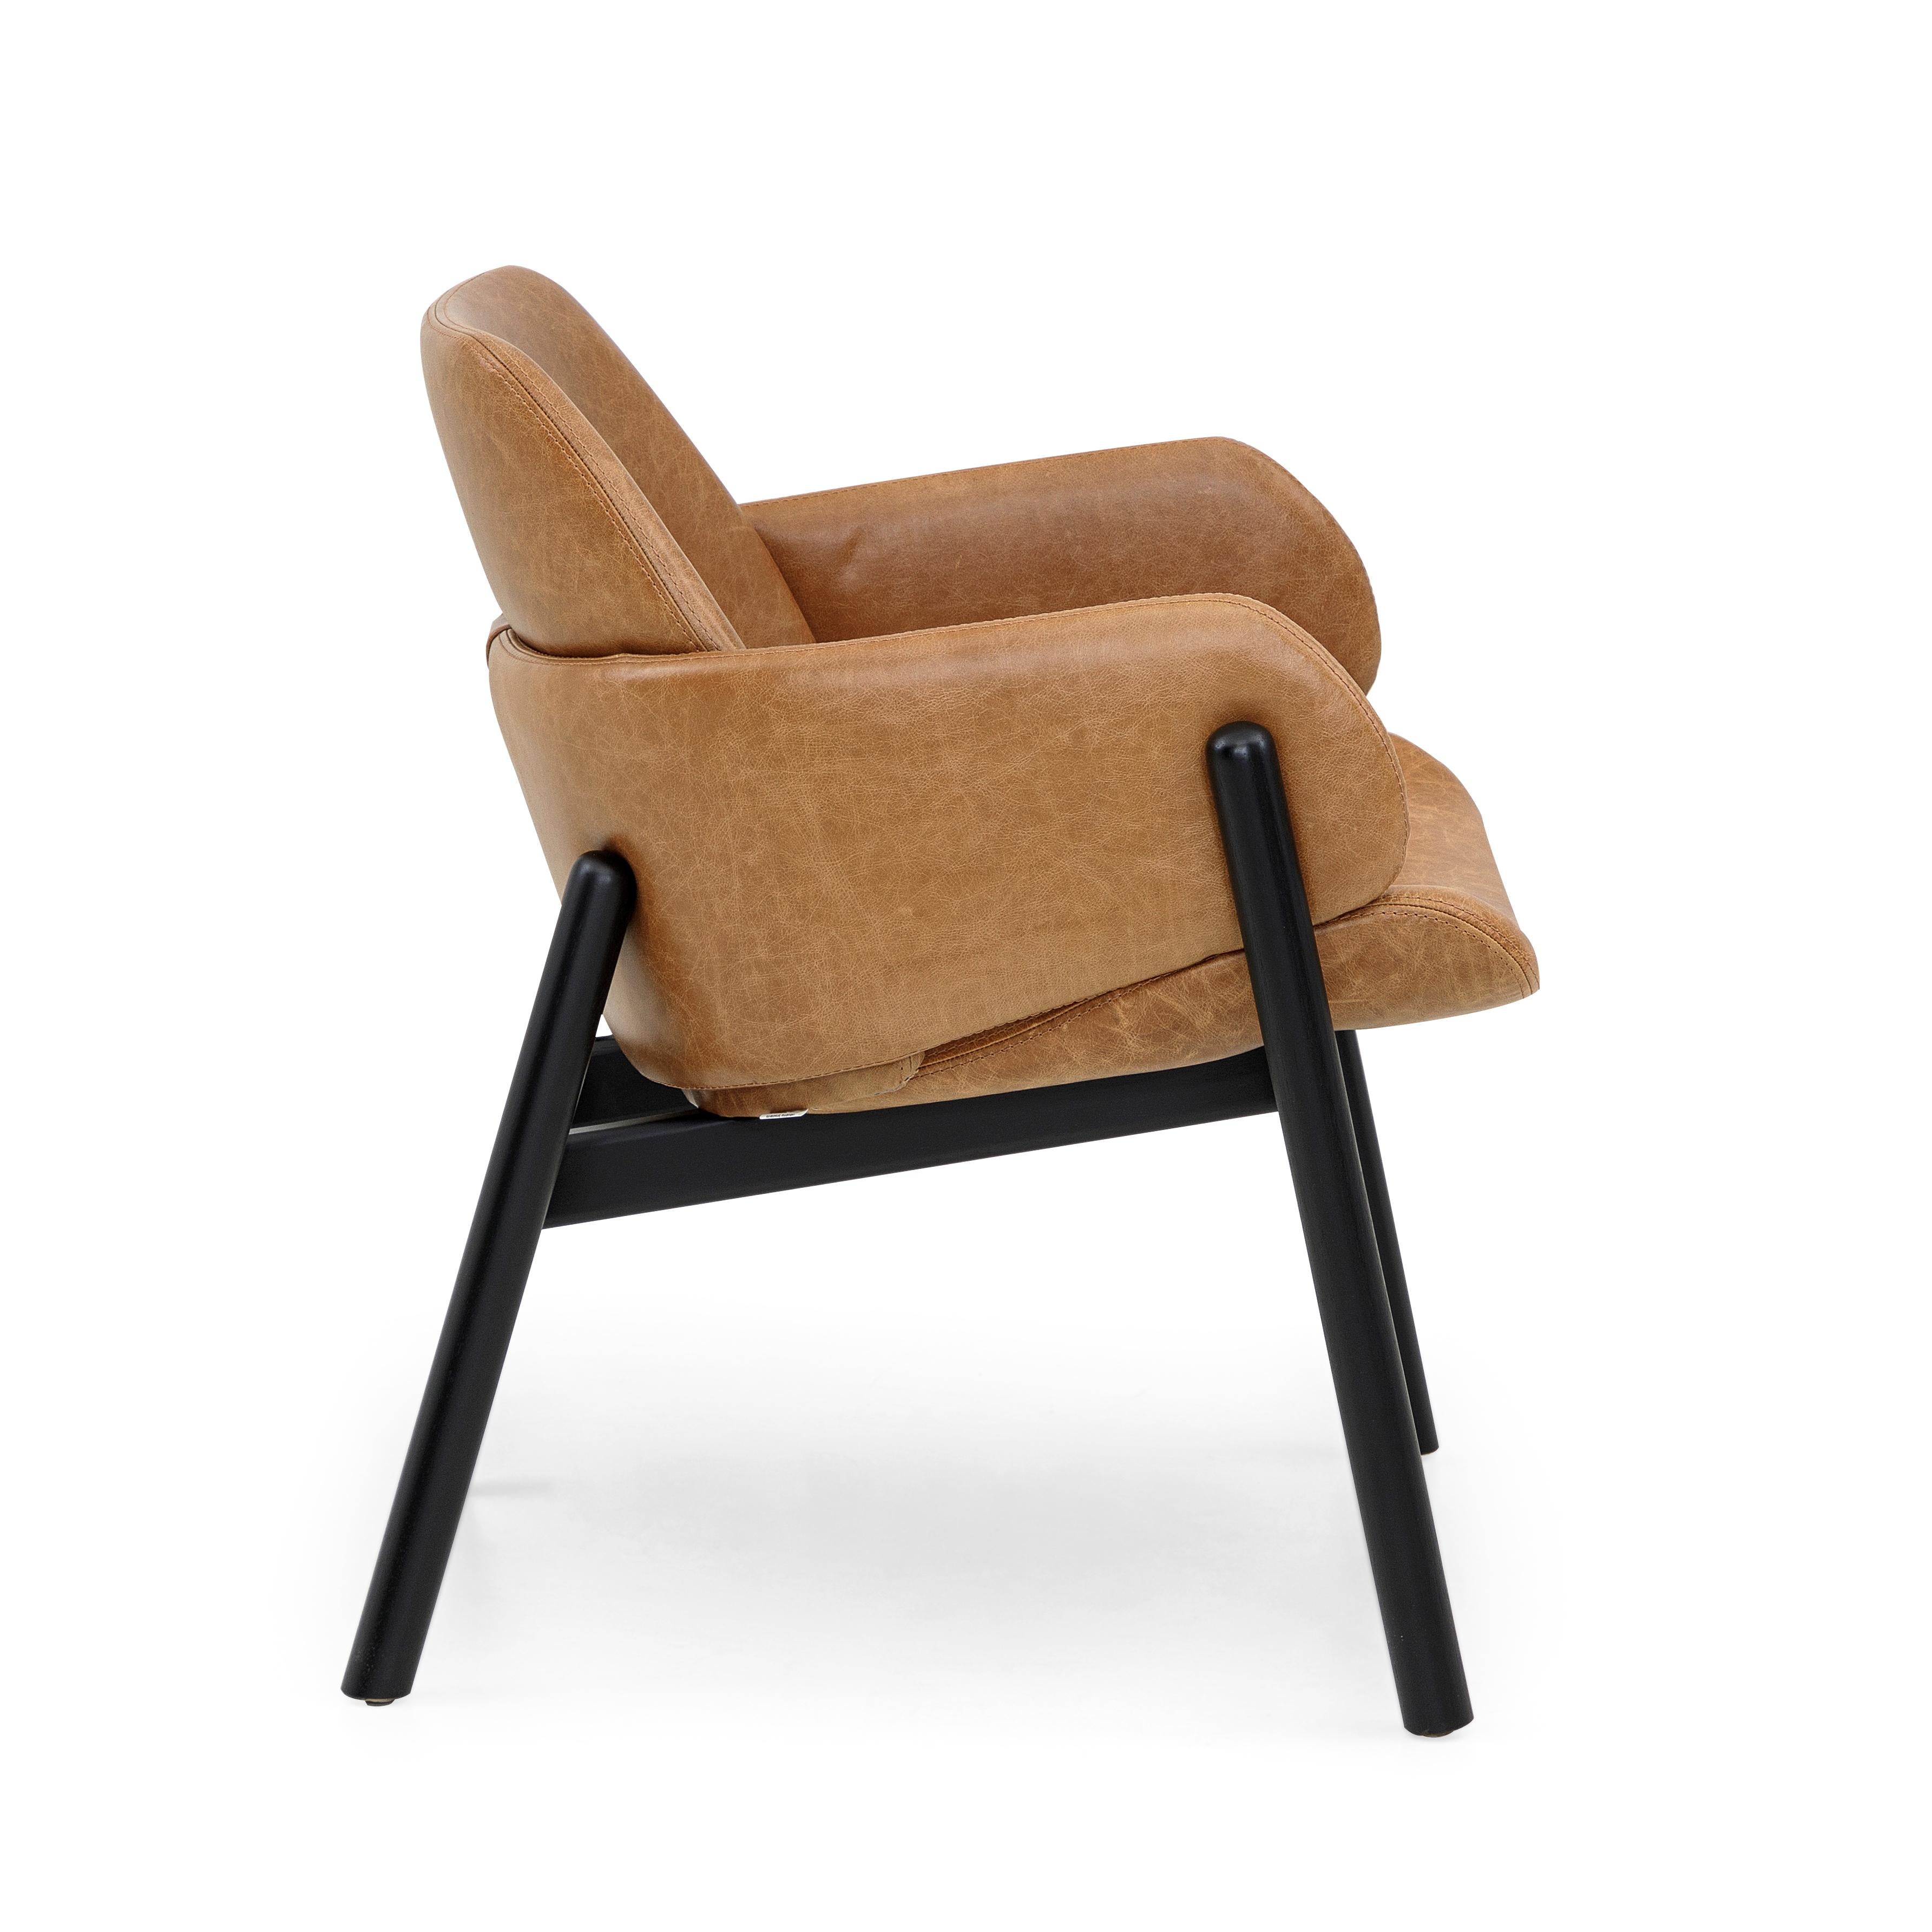 Der oben genannte Stuhl geht in puncto Design und Bequemlichkeit weit darüber hinaus. Die Kombination des braunen Leders und des schwarz lackierten Gestells erlaubt es, den Above Stuhl in bereits etablierten Räumen und in Räumen des neuen Designs zu